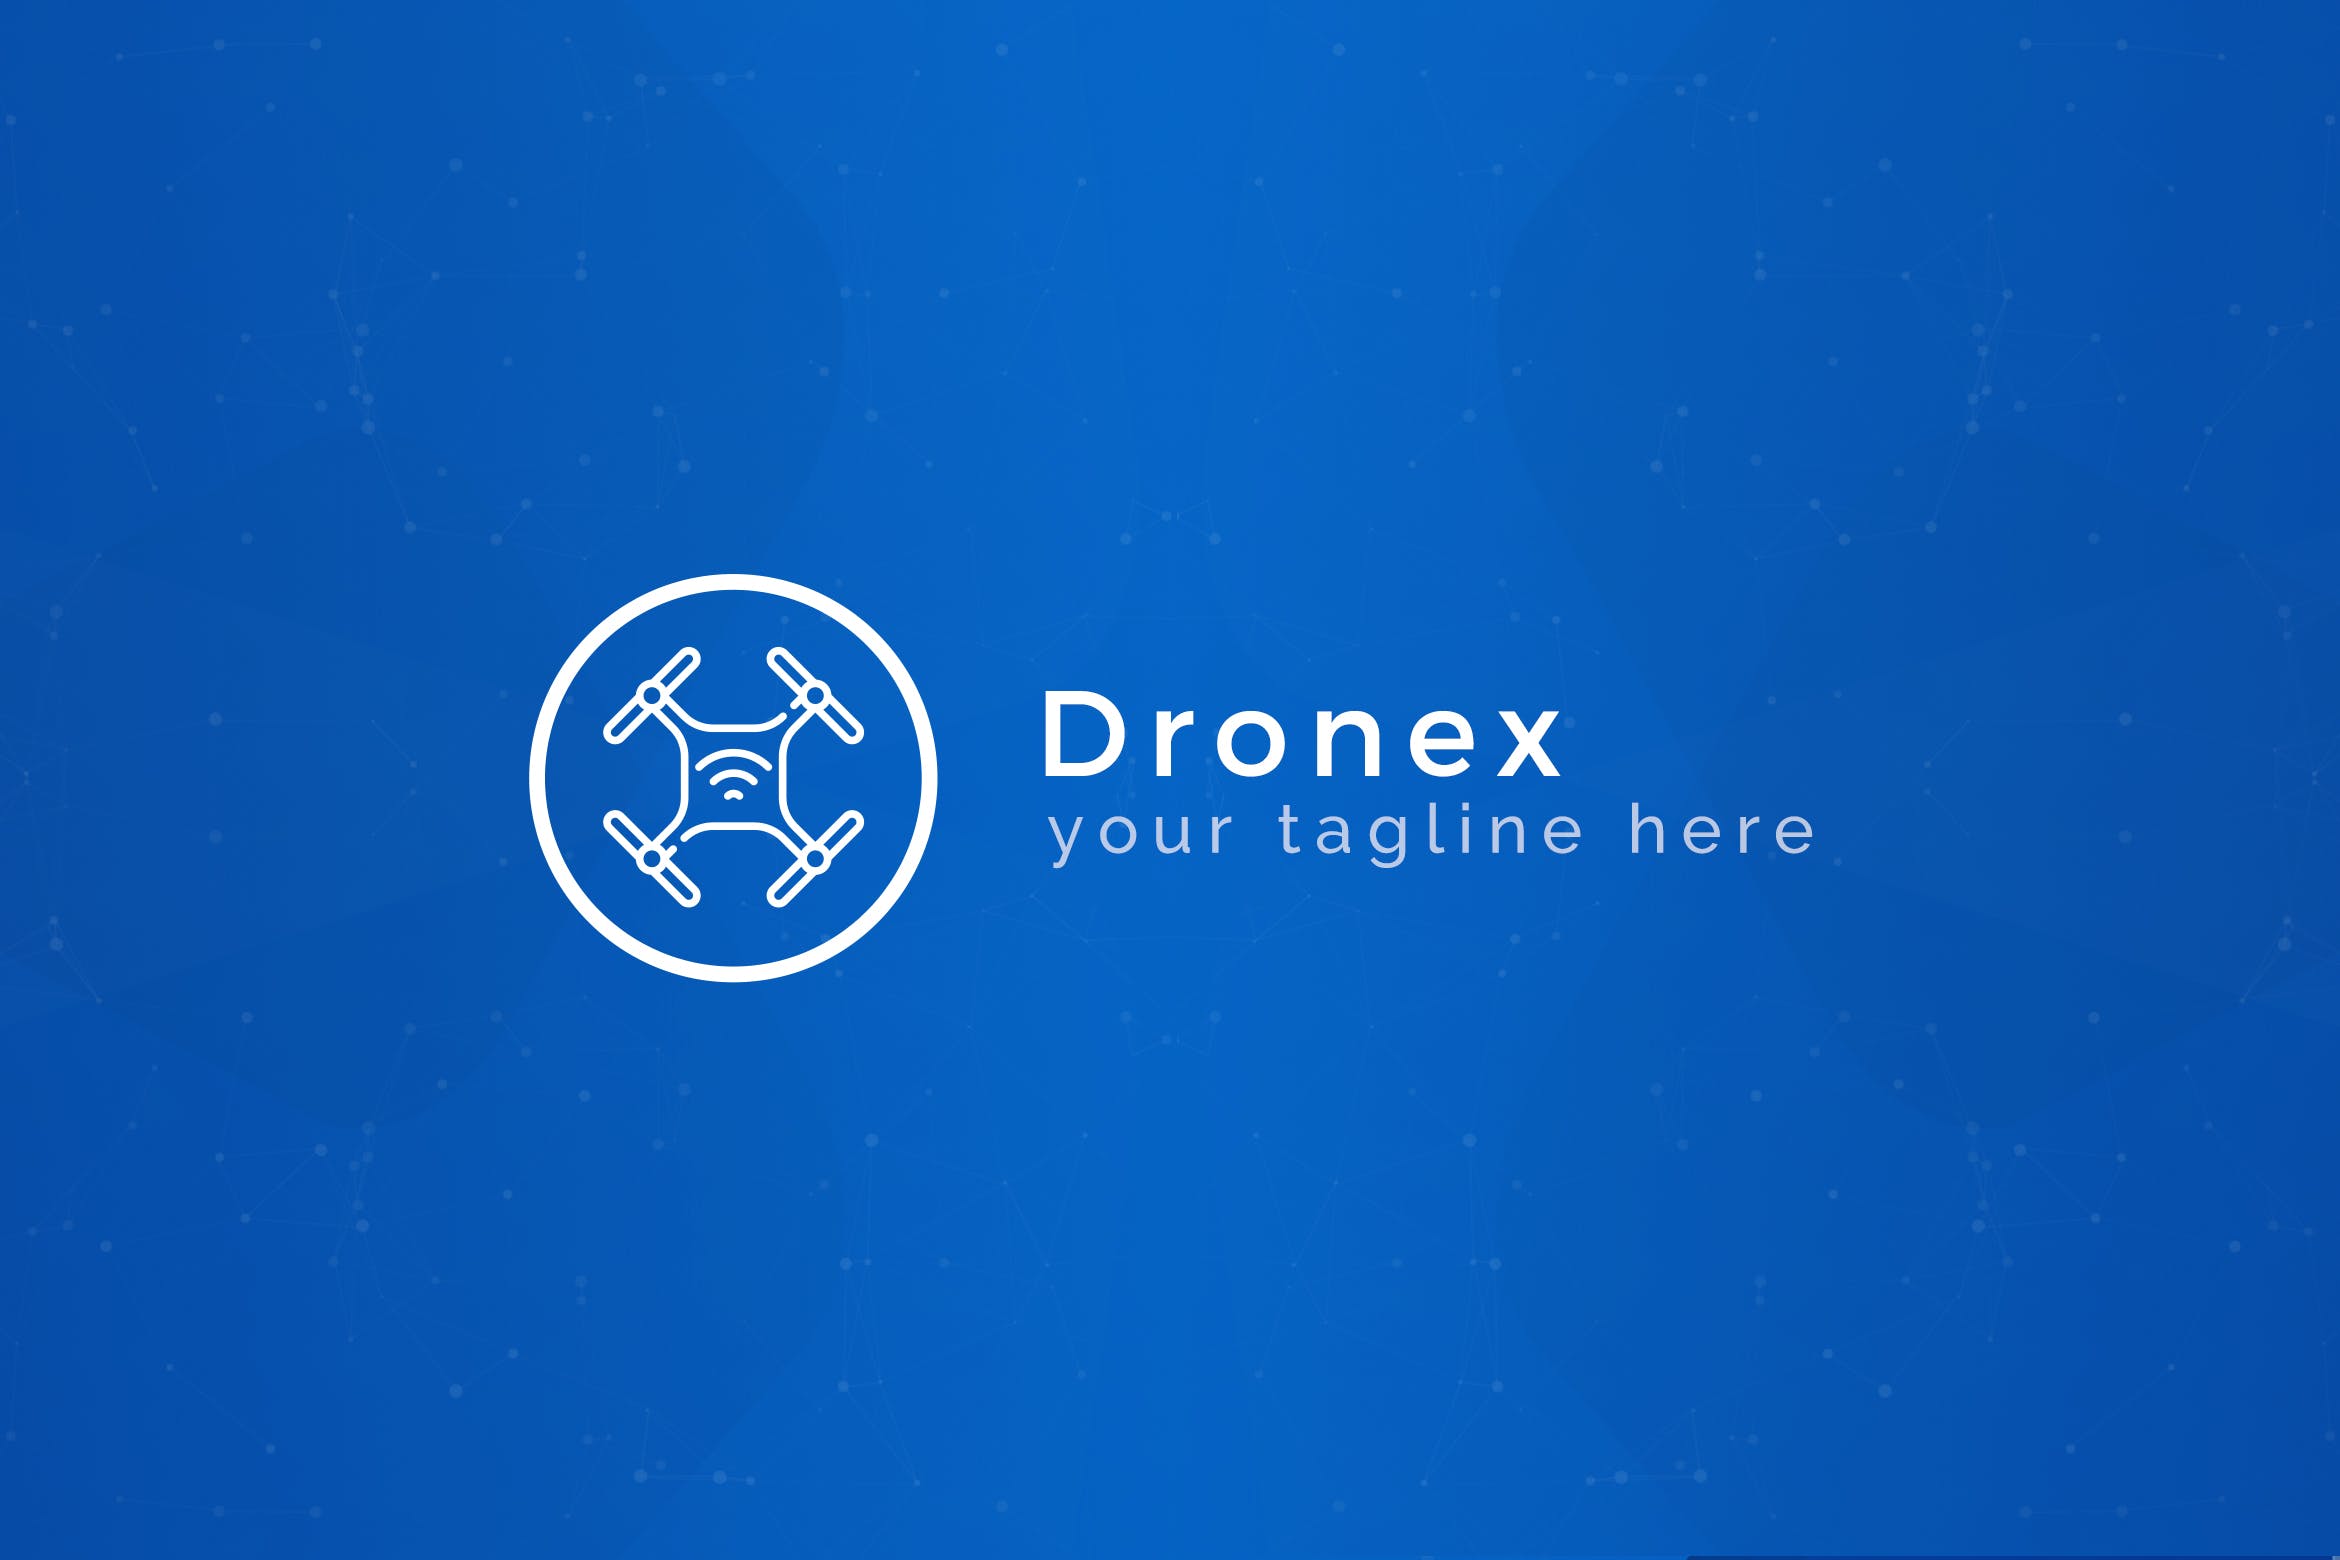 无人机品牌Logo设计第一素材精选模板 Dronex – Premium Drone Logo Template插图